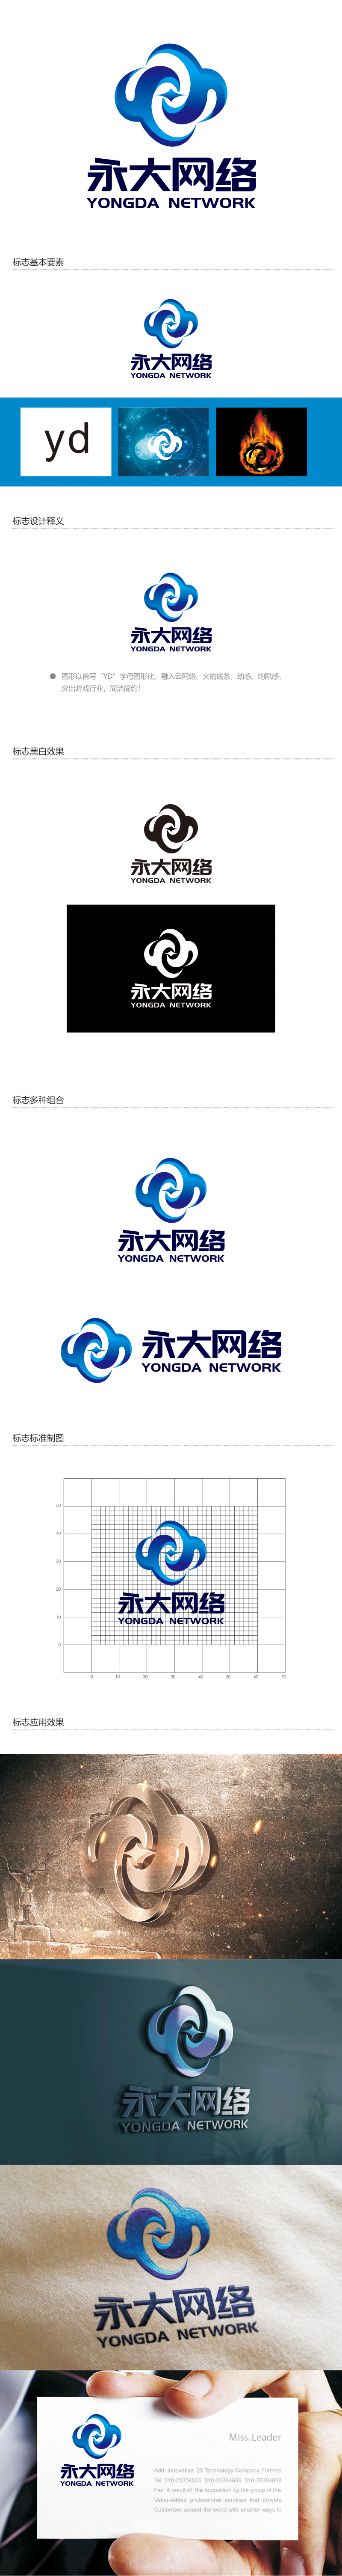 谭家强的永大网络logo设计